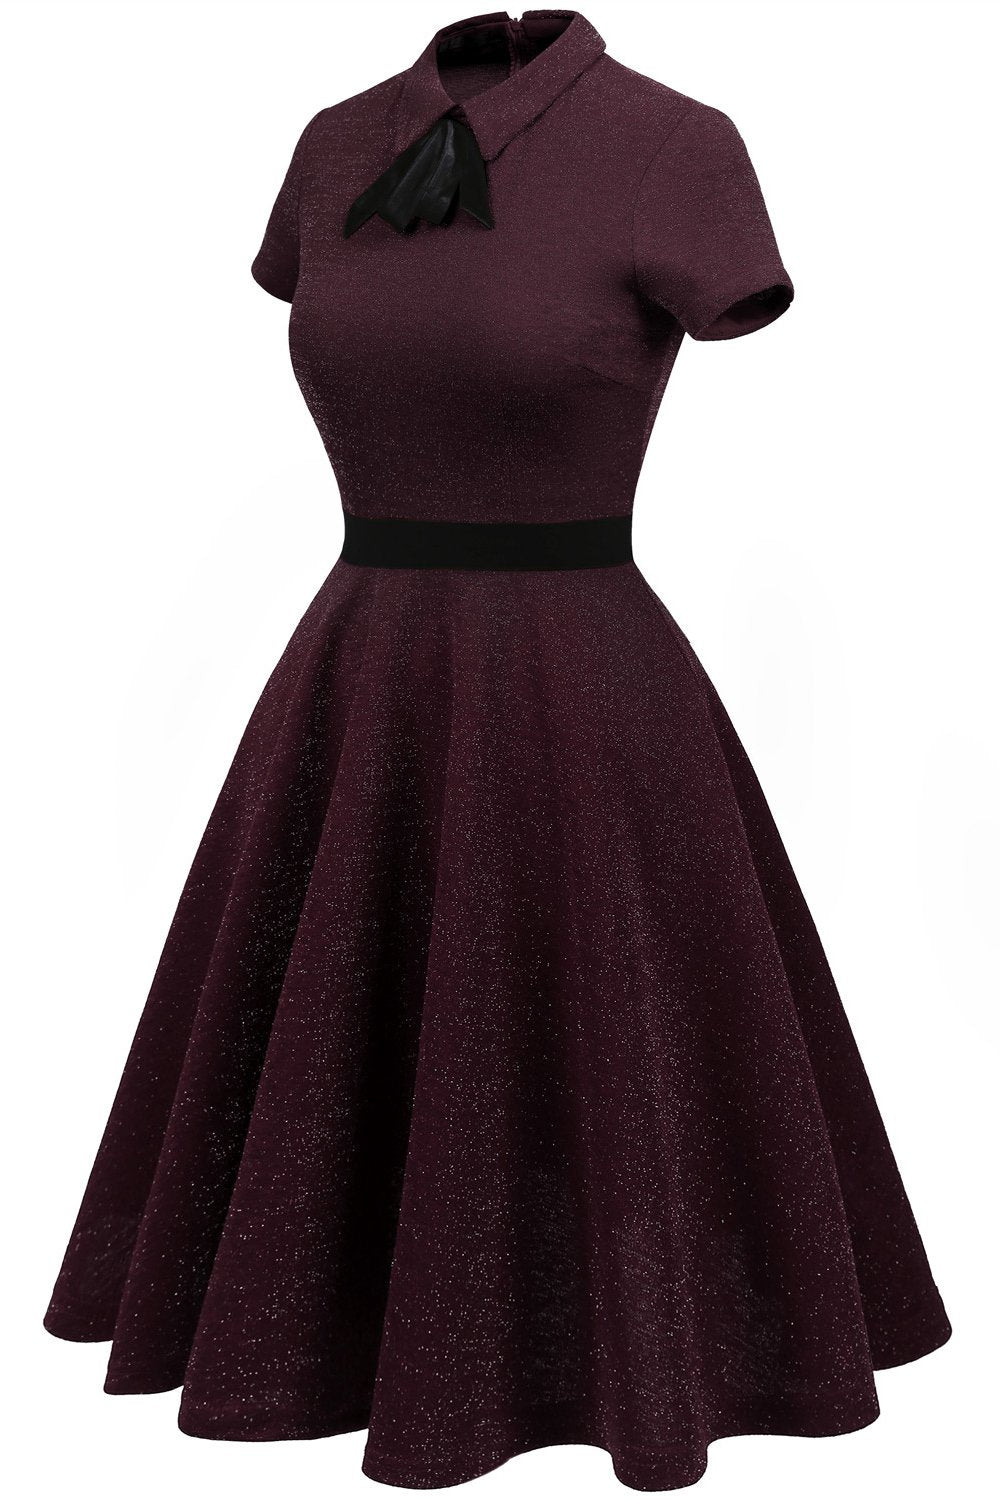 Burgundy 50s Vintage Dress with Sleeves